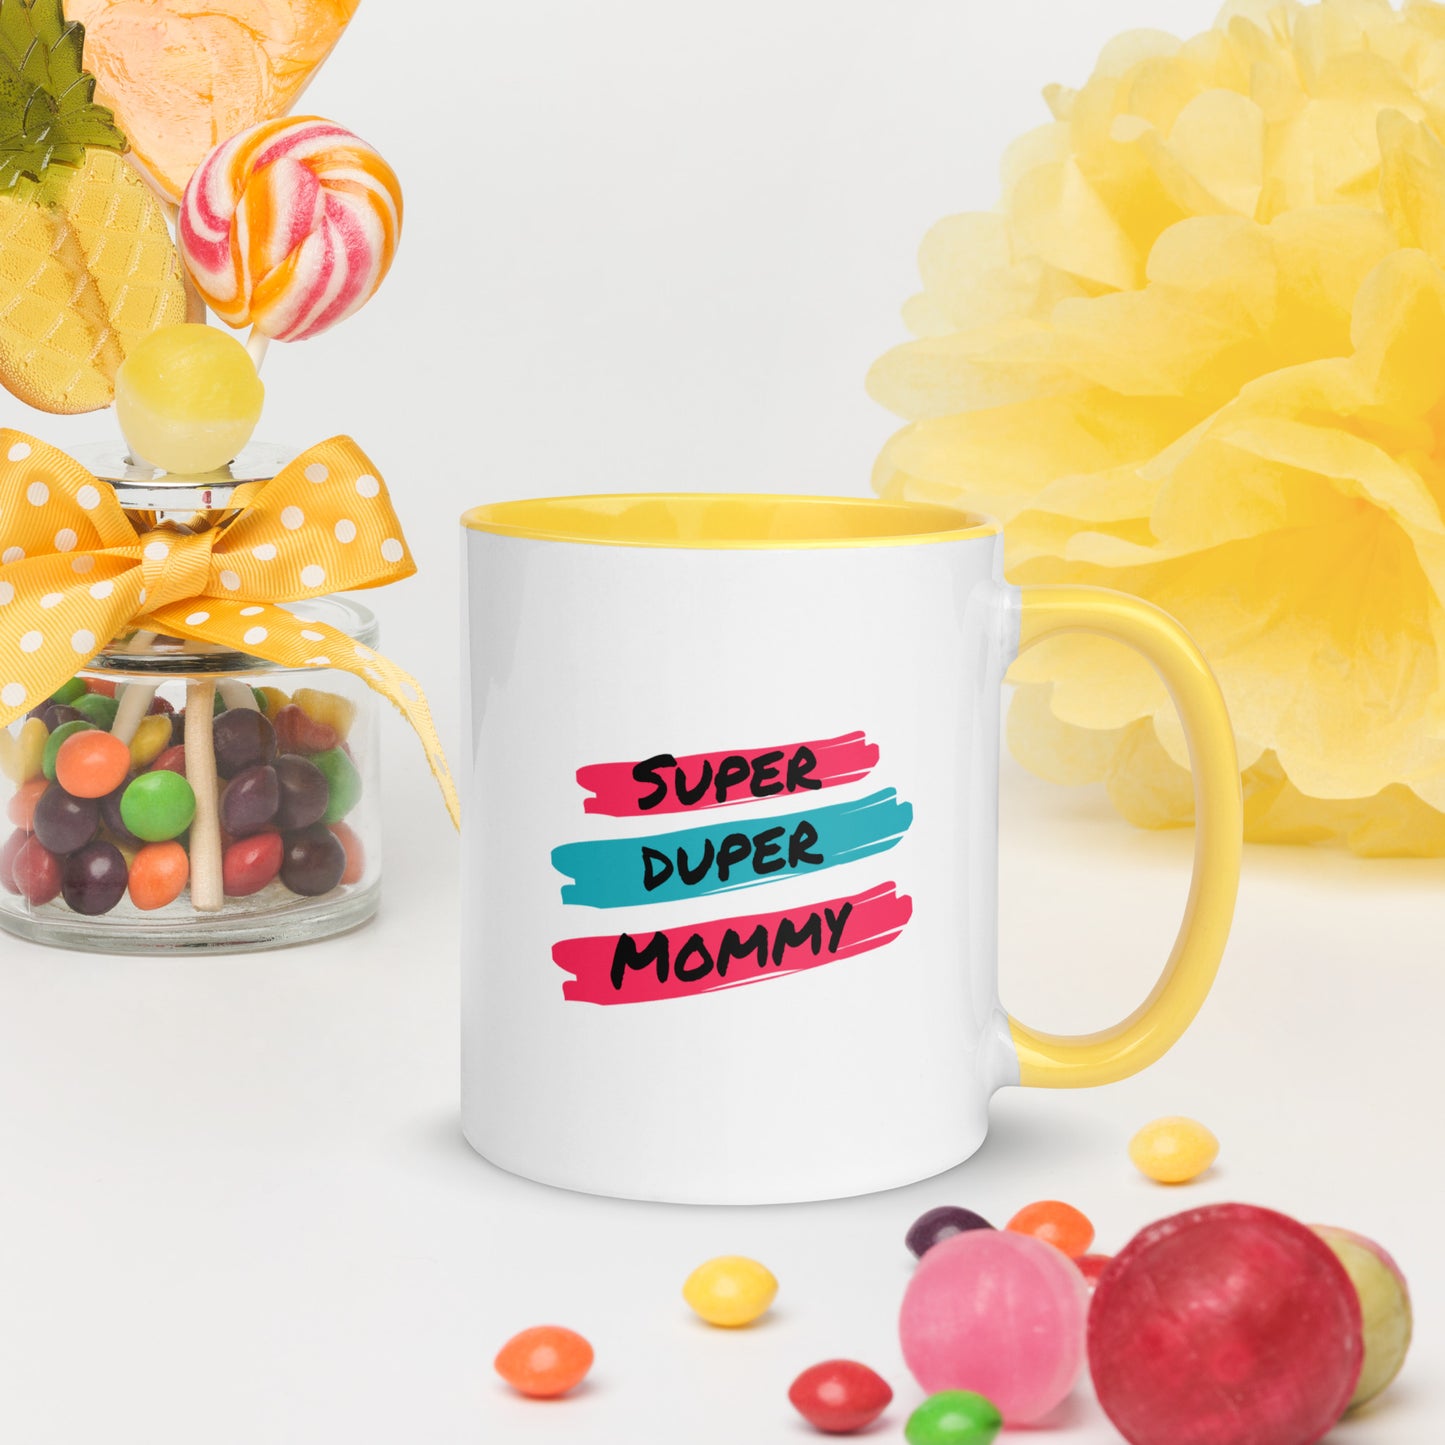 Super Duper Mom, Mug with Color Inside